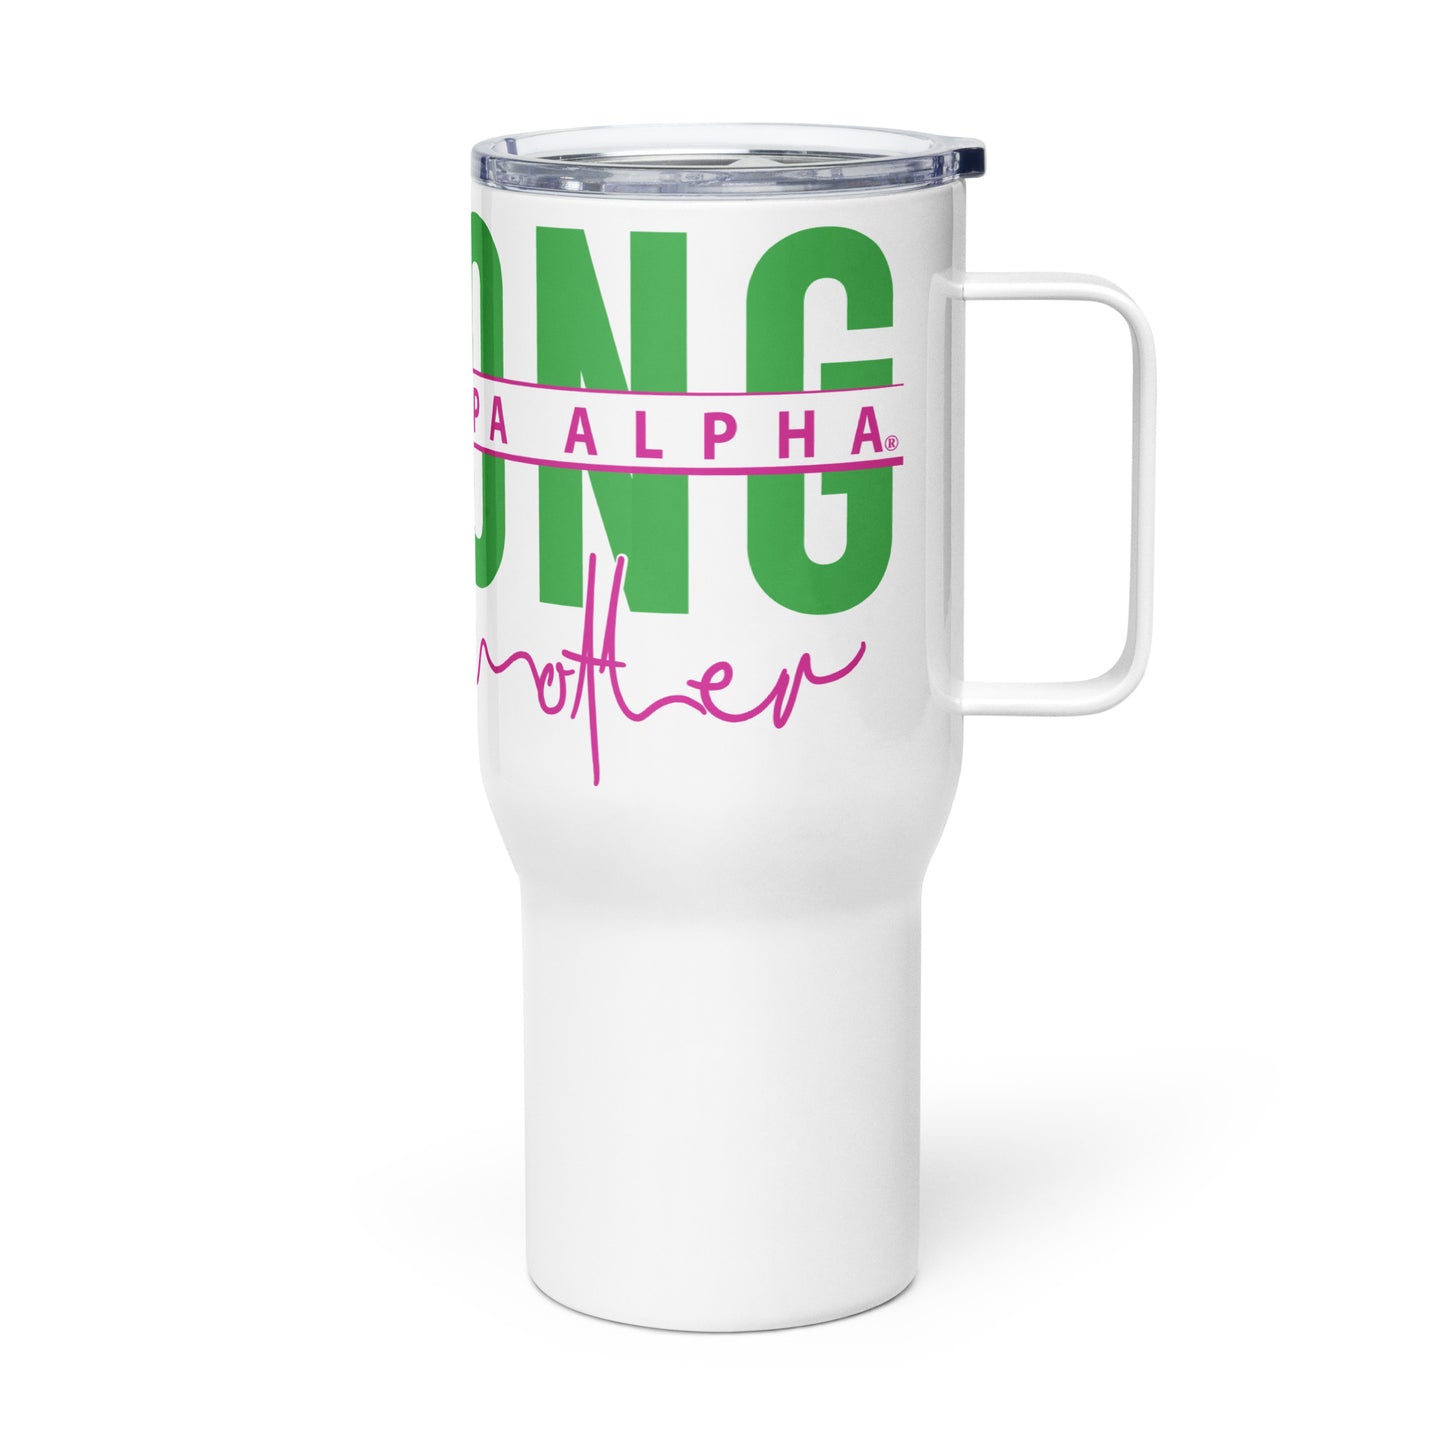 Alpha Kappa Alpha MOM Strong Travel mug with a handle